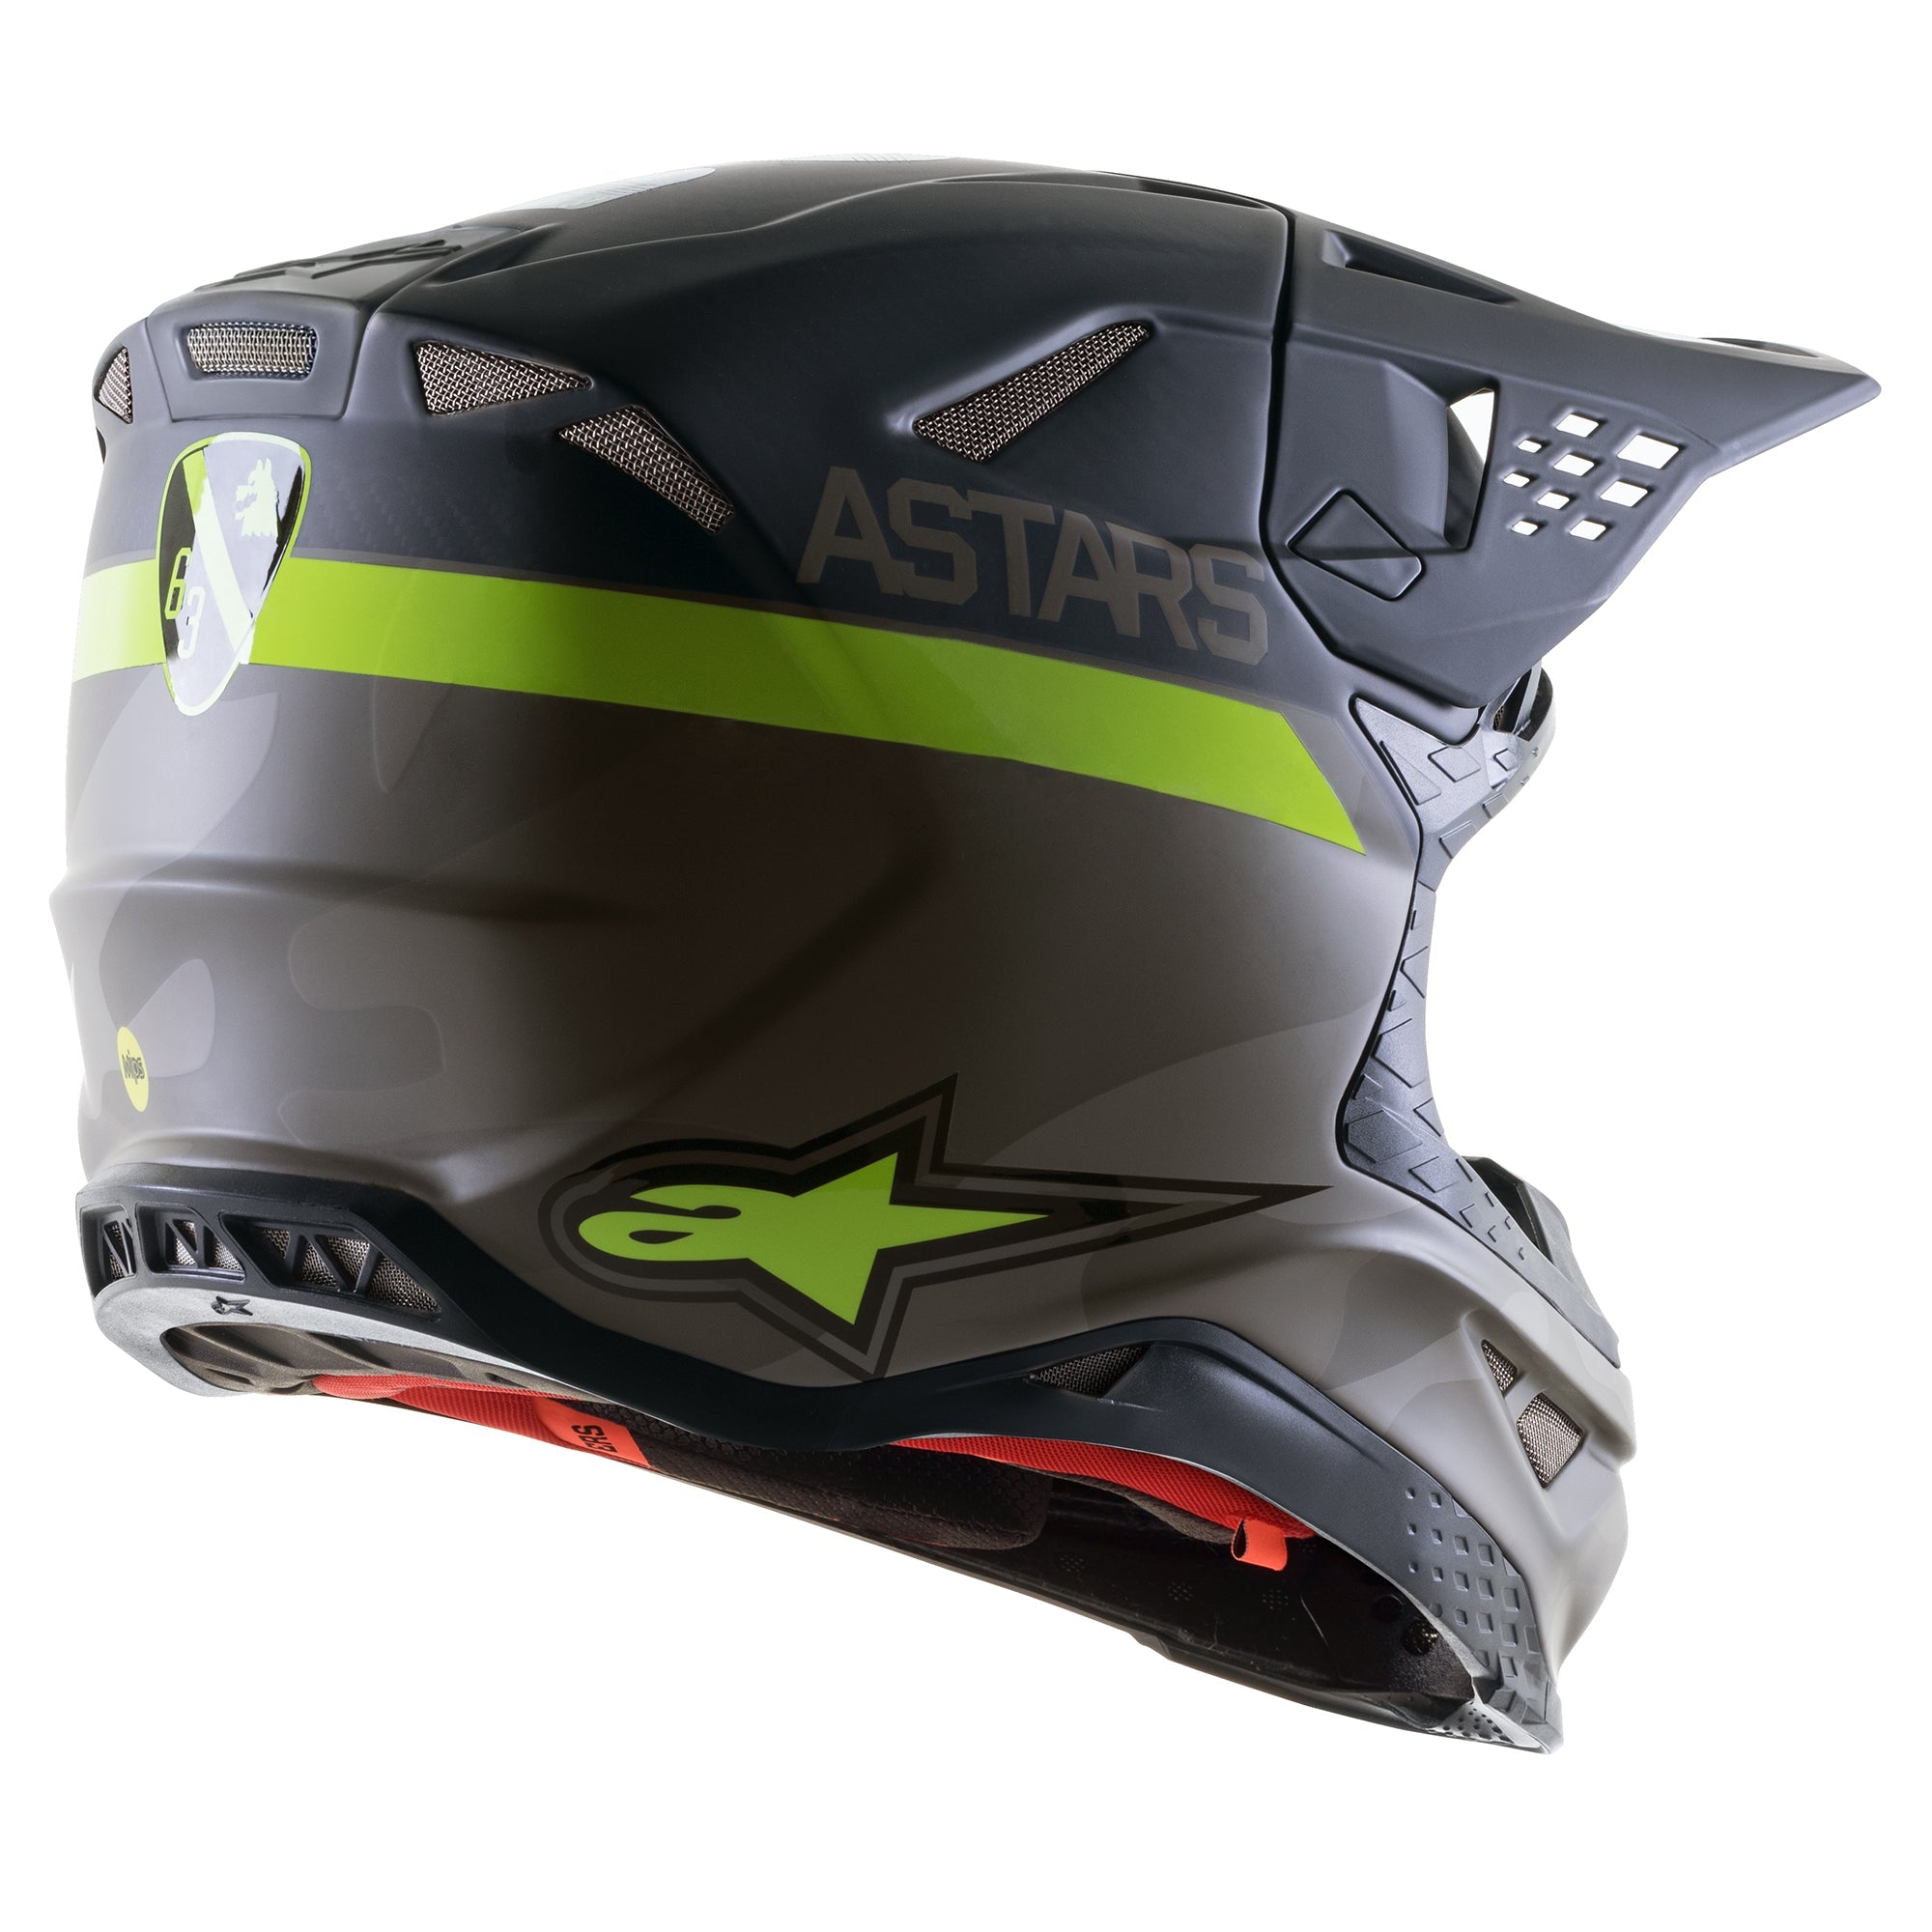 Limited Edition AMS 21 Supertech S-M10 Helmet